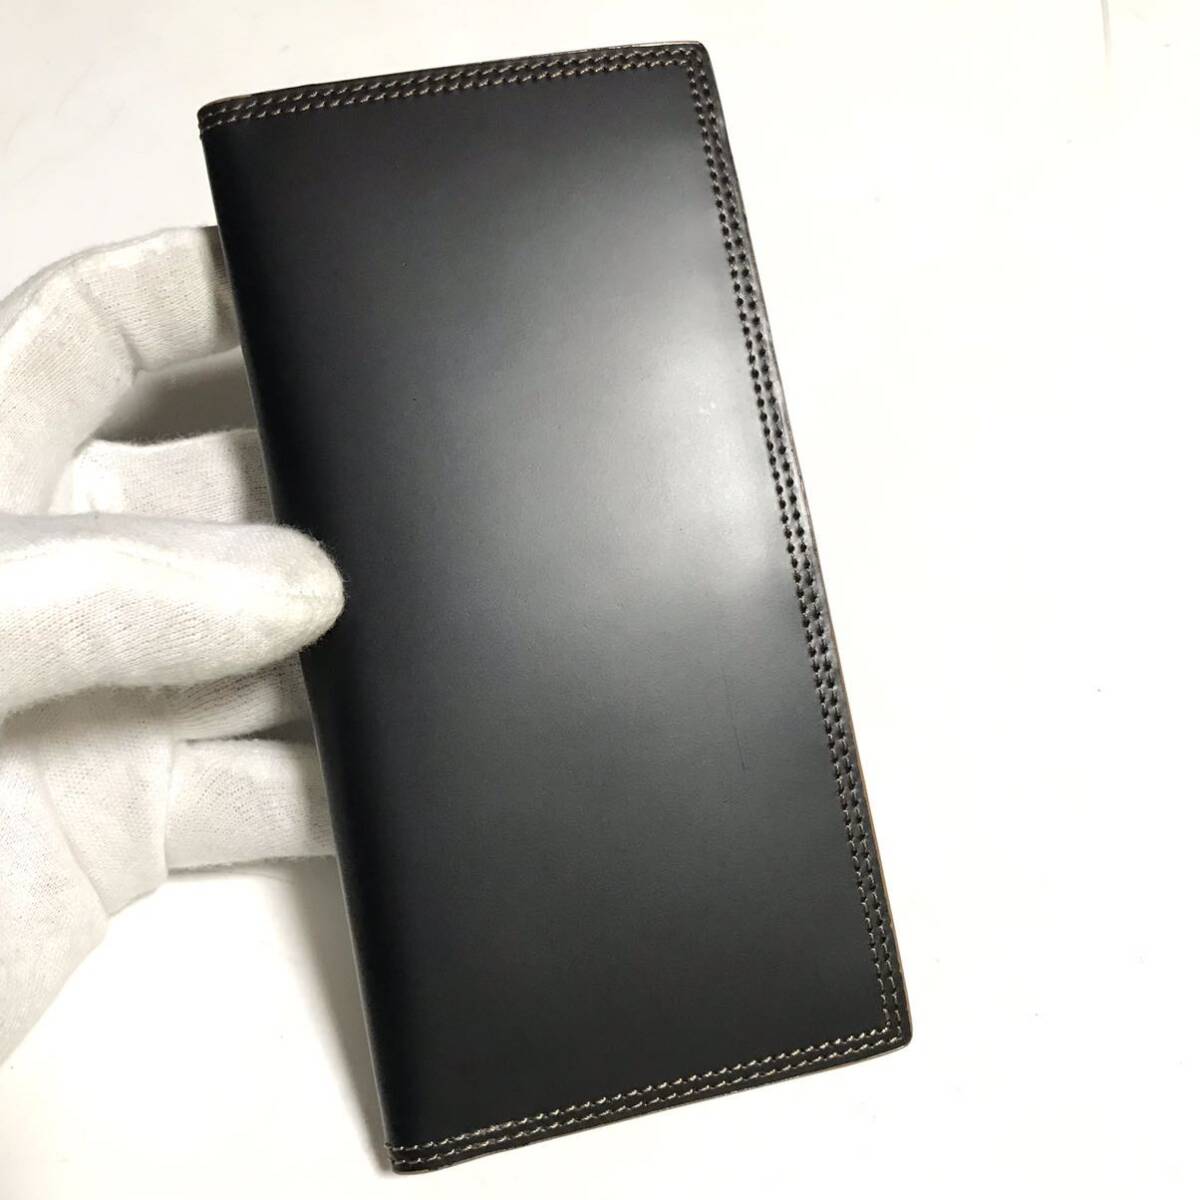 CORDOVAN カードケース コードバン 馬革 ヌメ革 ブラック 財布 名刺入れ 薄型 の画像2